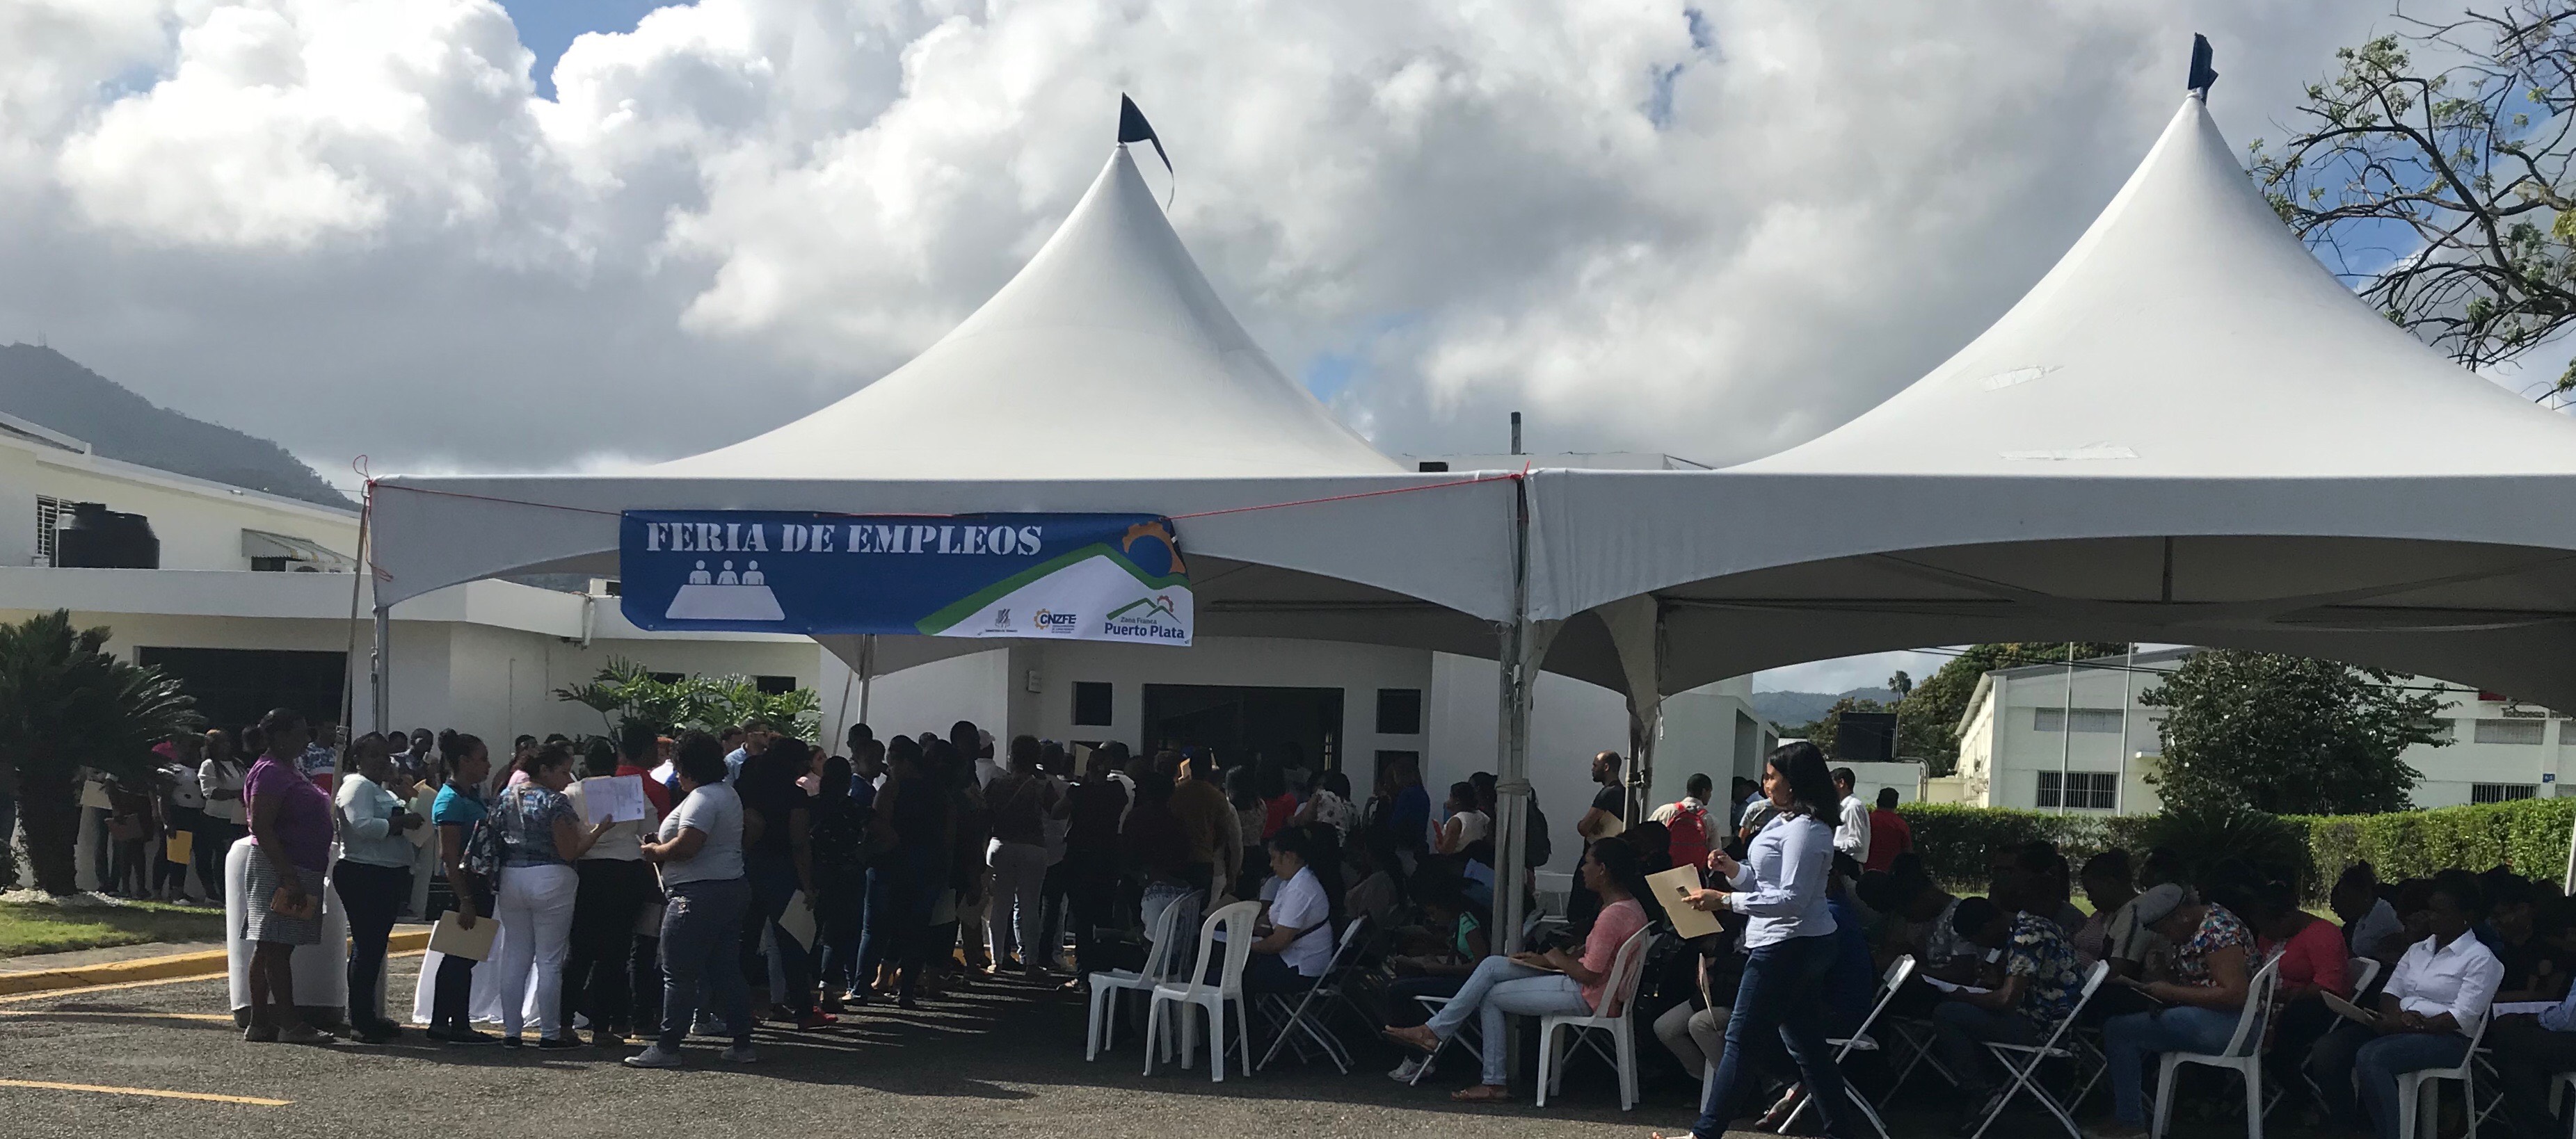 Cientos de personas acuden a feria de empleos realizada en la Zona Franca Industrial de Puerto Plata